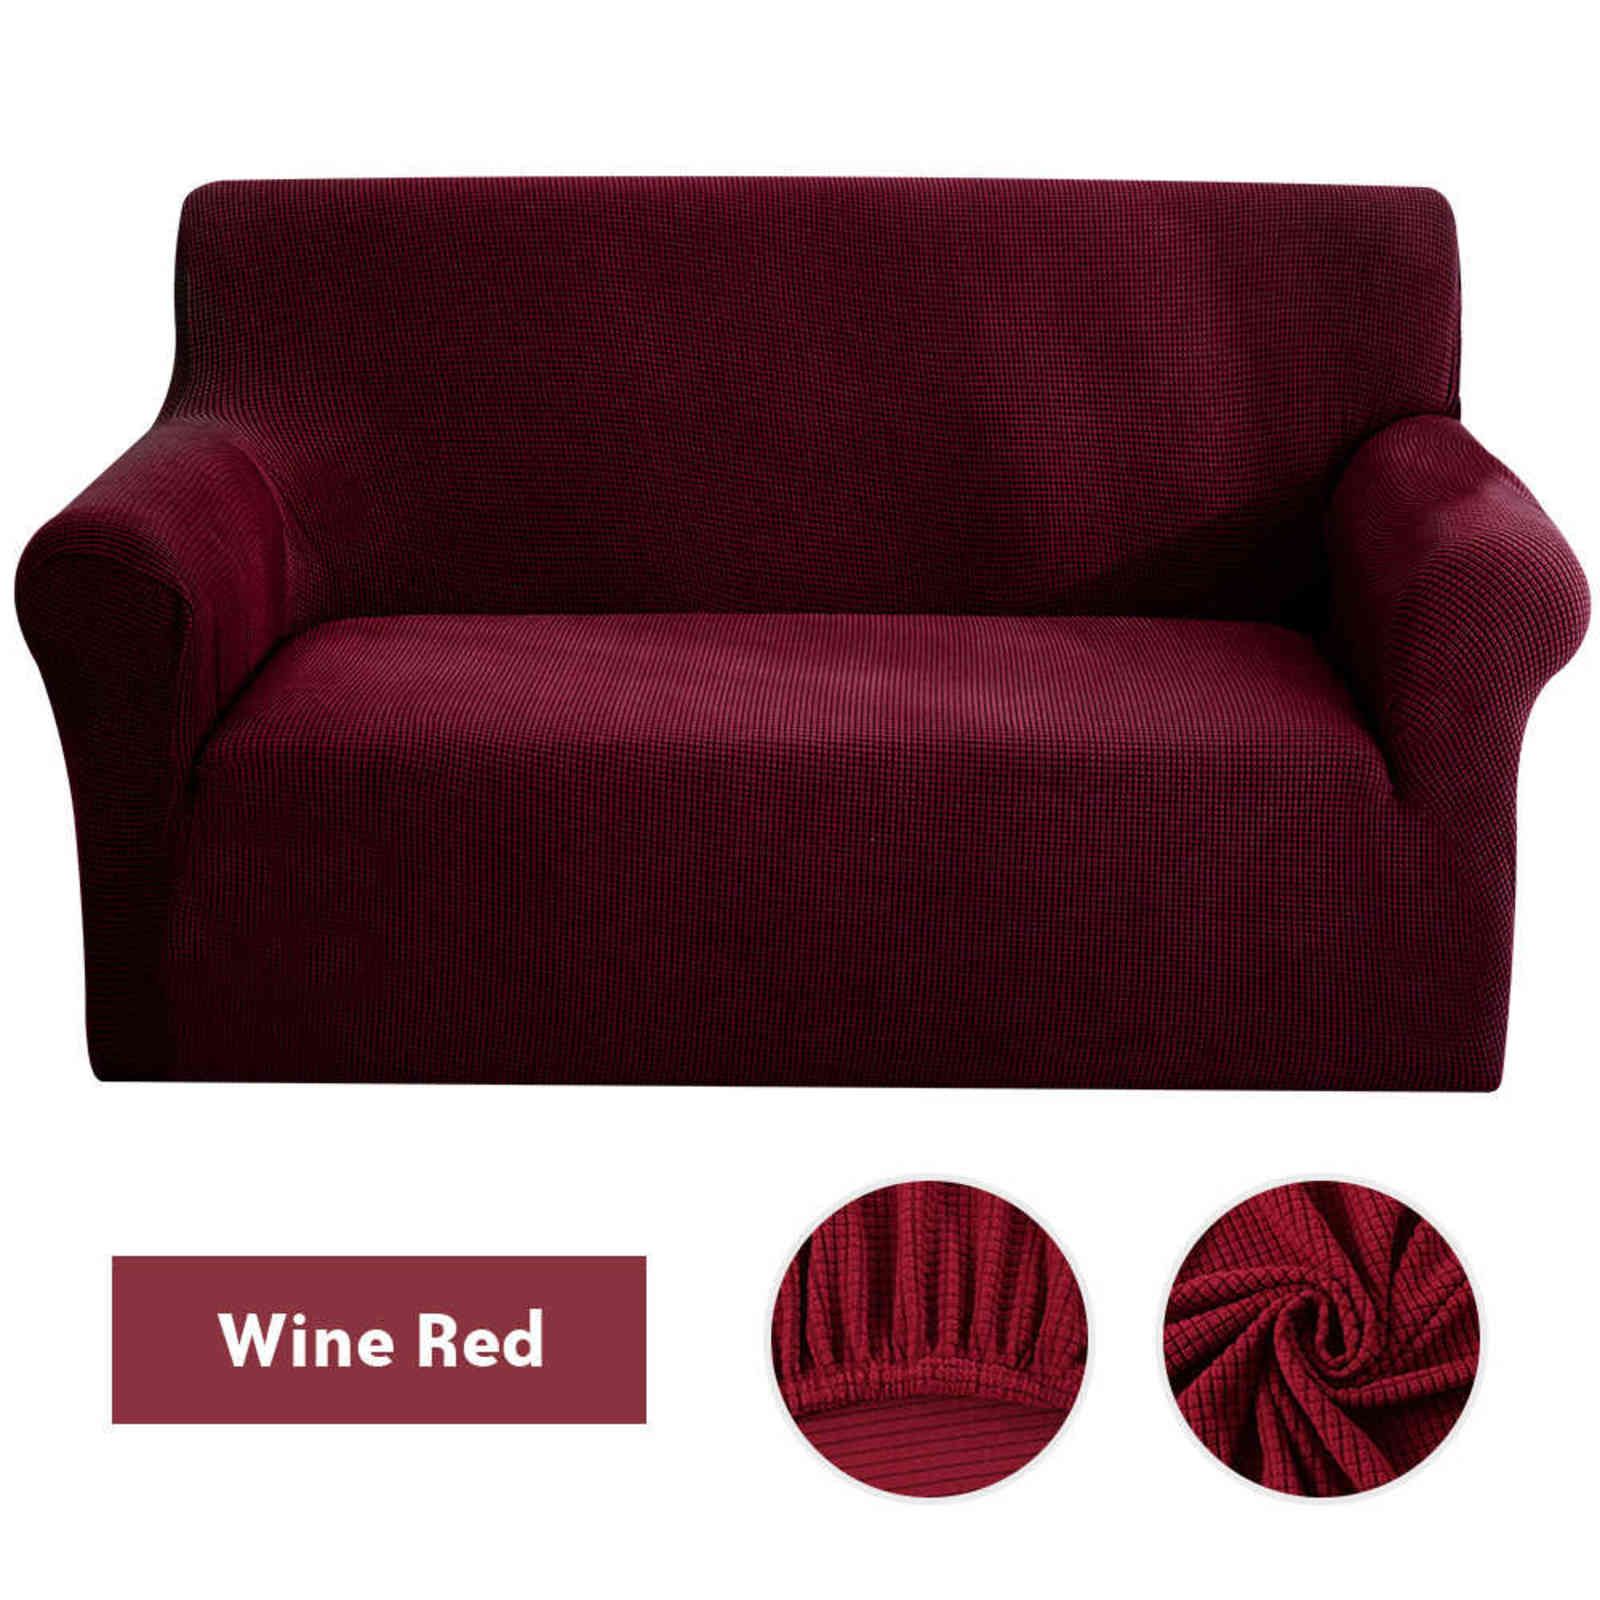 Wijn rood-3-zits (190-230cm)